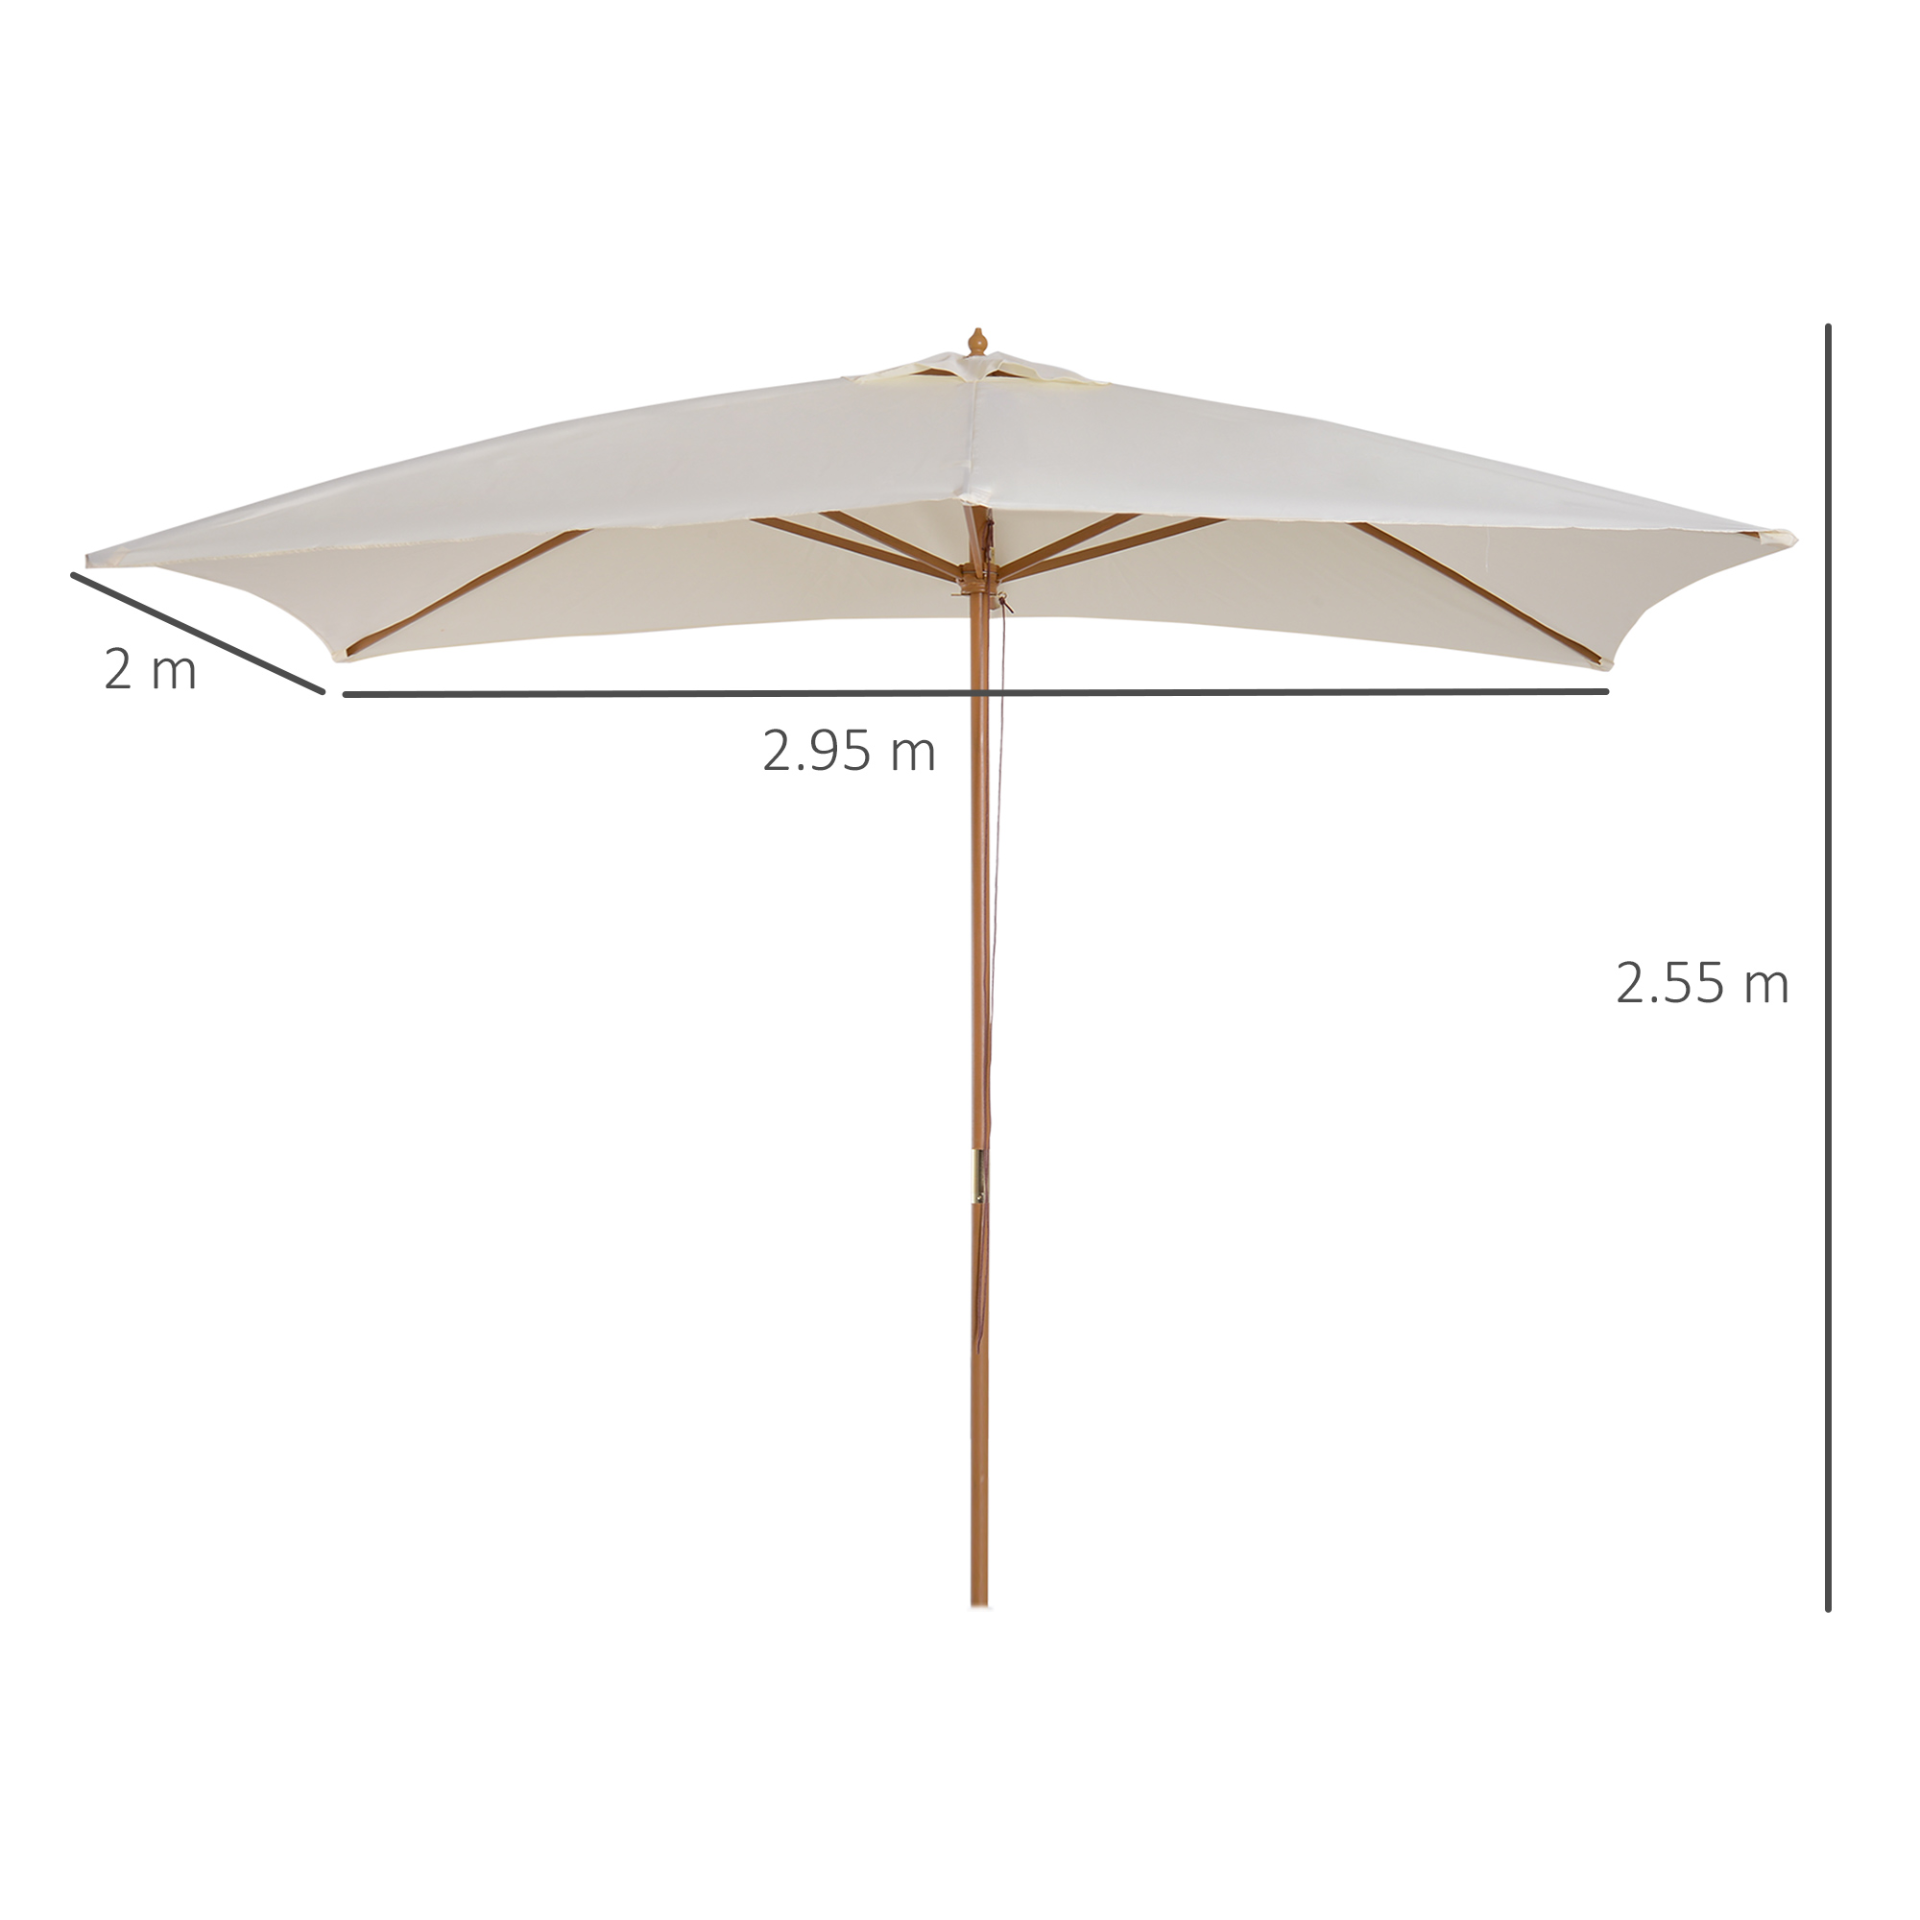 Outsunny 2 x 3m Wooden Parasol Garden Umbrellas Sun Shade Patio Outdoor Umbrella Canopy Cream